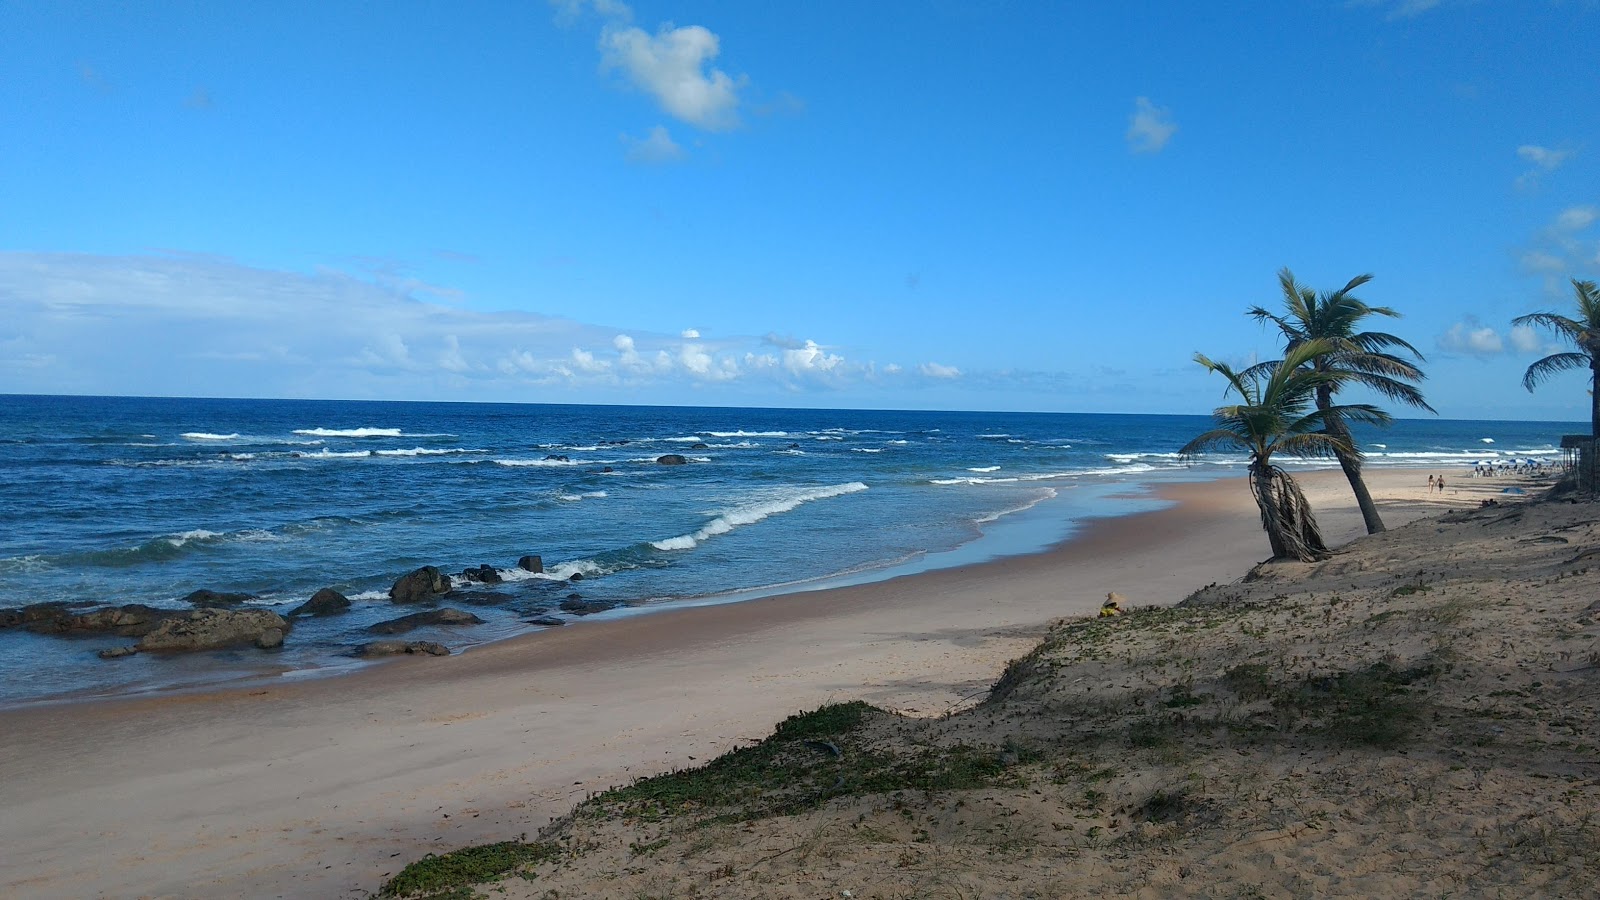 Foto von Praia de Santo Antonio - beliebter Ort unter Entspannungskennern